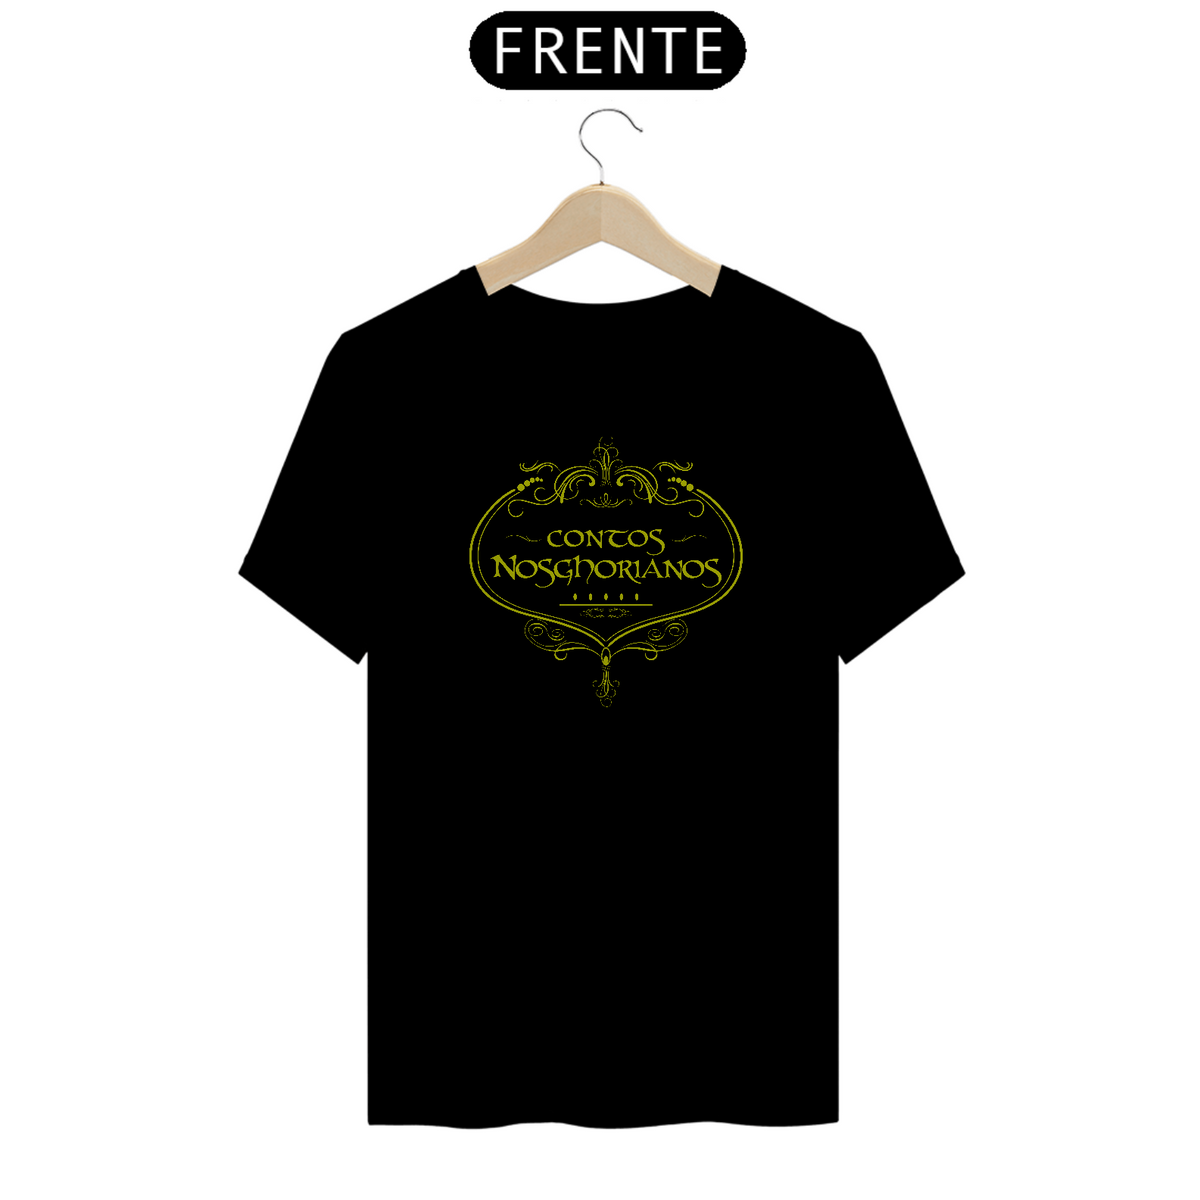 Nome do produto: Camiseta de Brasão VERDE de ARTONGIL de Nosghor Seremcores 